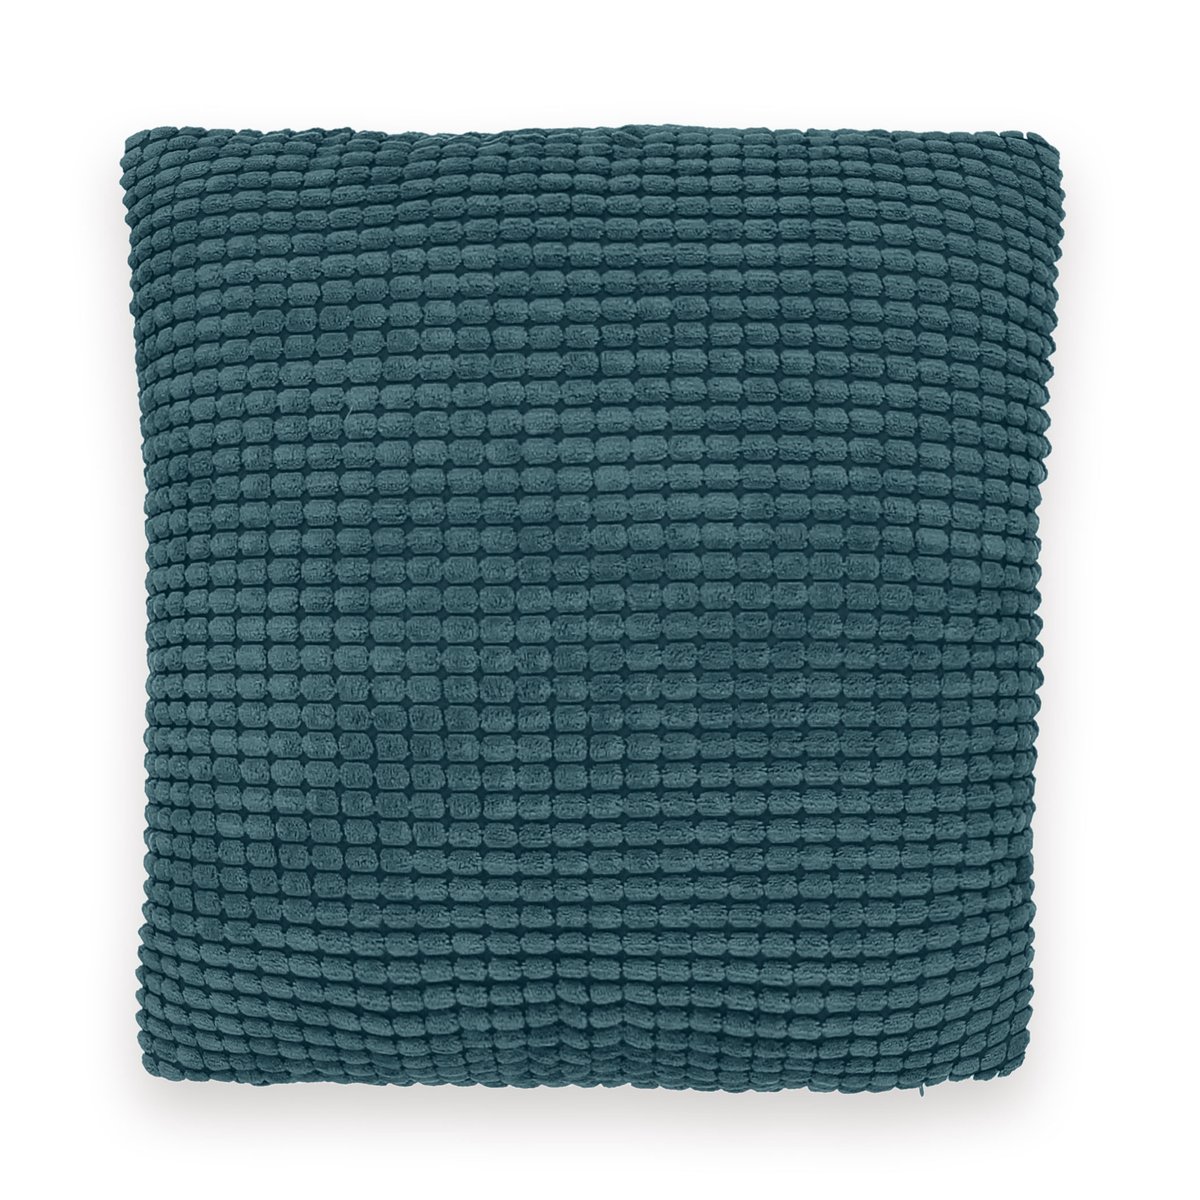 Чехол LaRedoute Для подушки с рельефным узором FLUFFY 40 x 40 см зеленый, размер 40 x 40 см